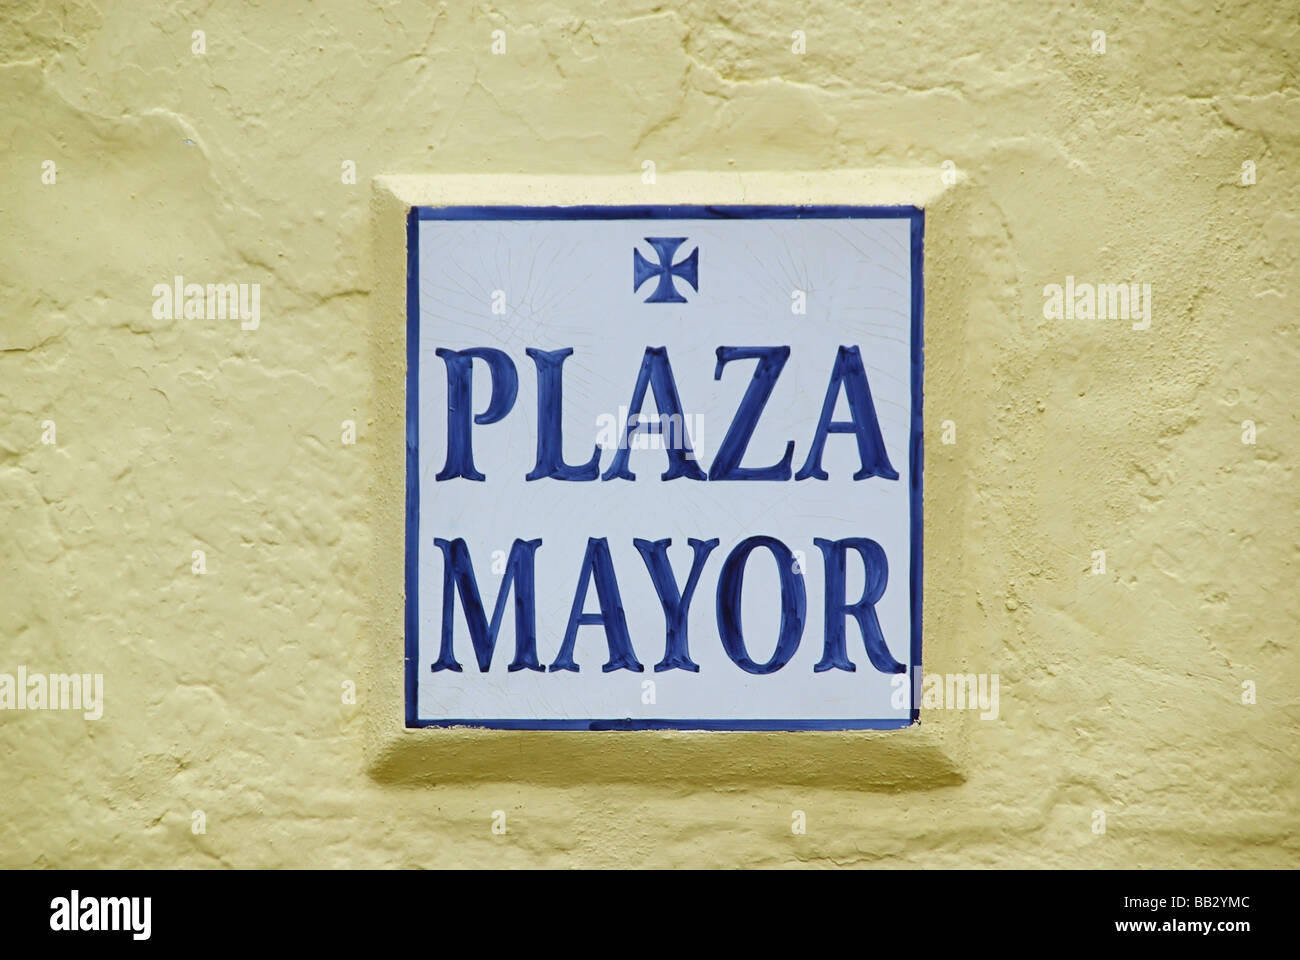 Plaza Mayor Schild Plaza Mayor sign 01 Stock Photo